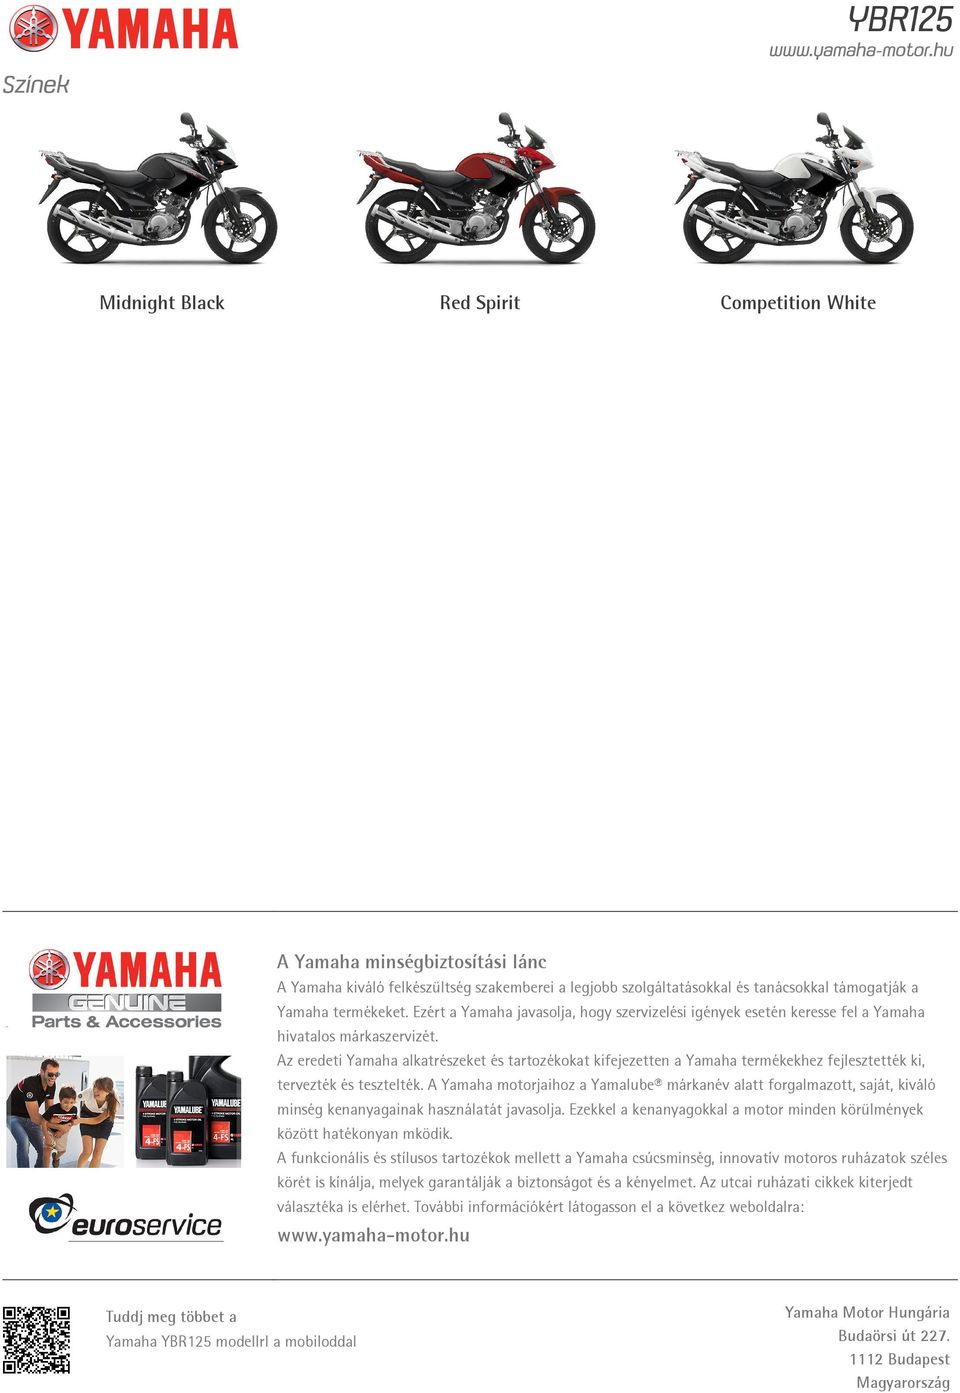 Az eredeti Yamaha alkatrészeket és tartozékokat kifejezetten a Yamaha termékekhez fejlesztették ki, tervezték és tesztelték.